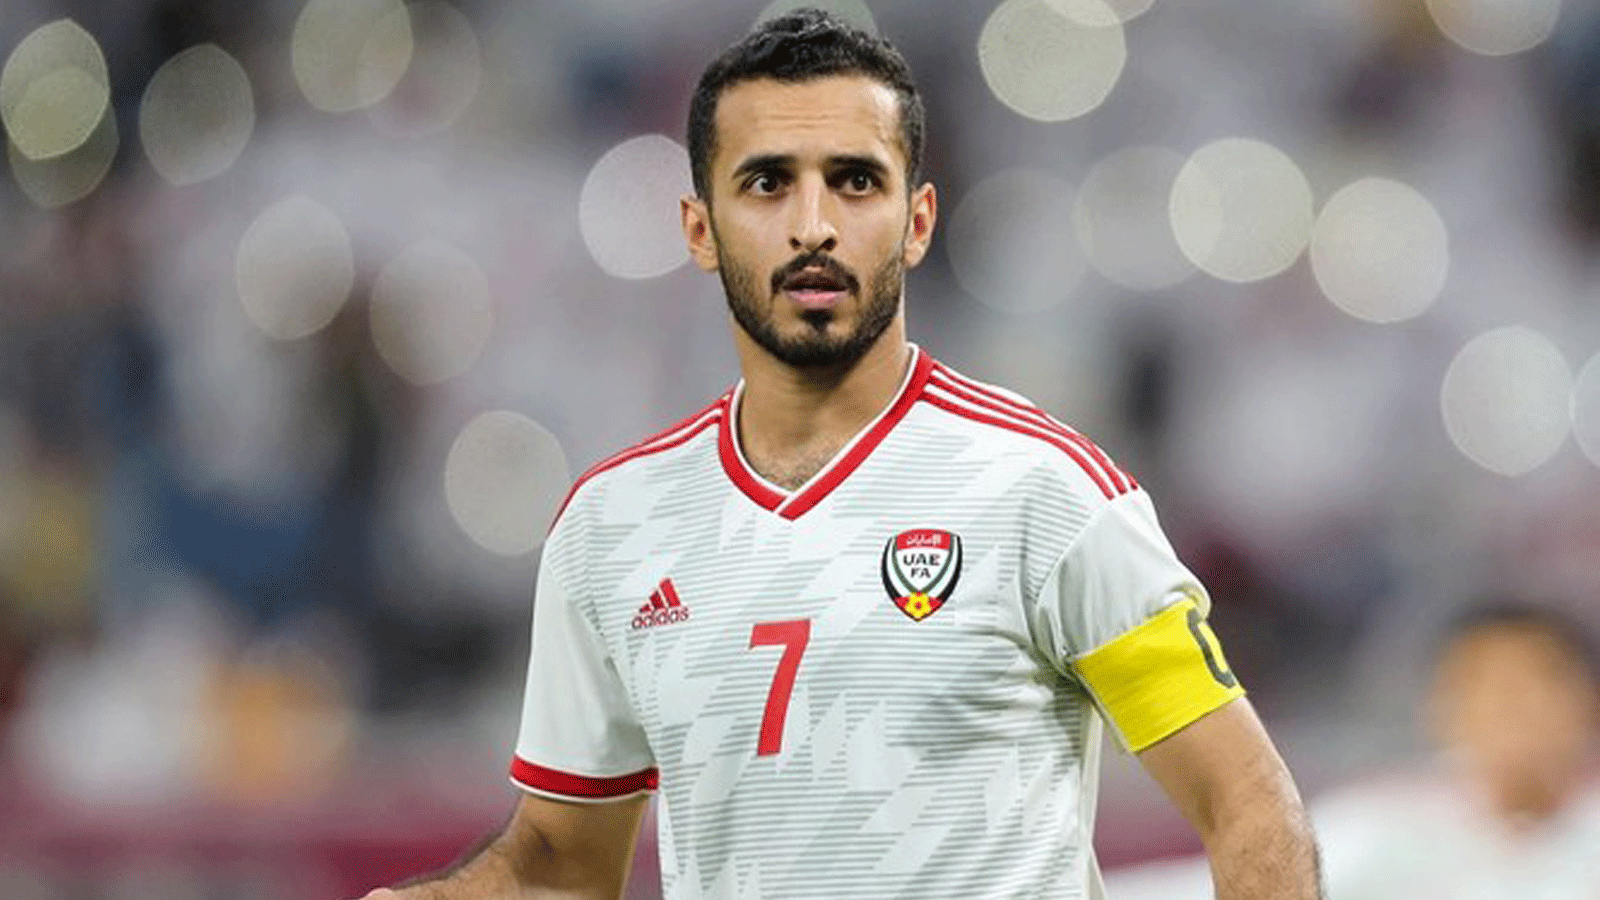  المهاجم الإماراتي علي مبخوت خلال مباراة المجموعة الأولى في كأس الخليج العربي 24 بين قطر والإمارات.